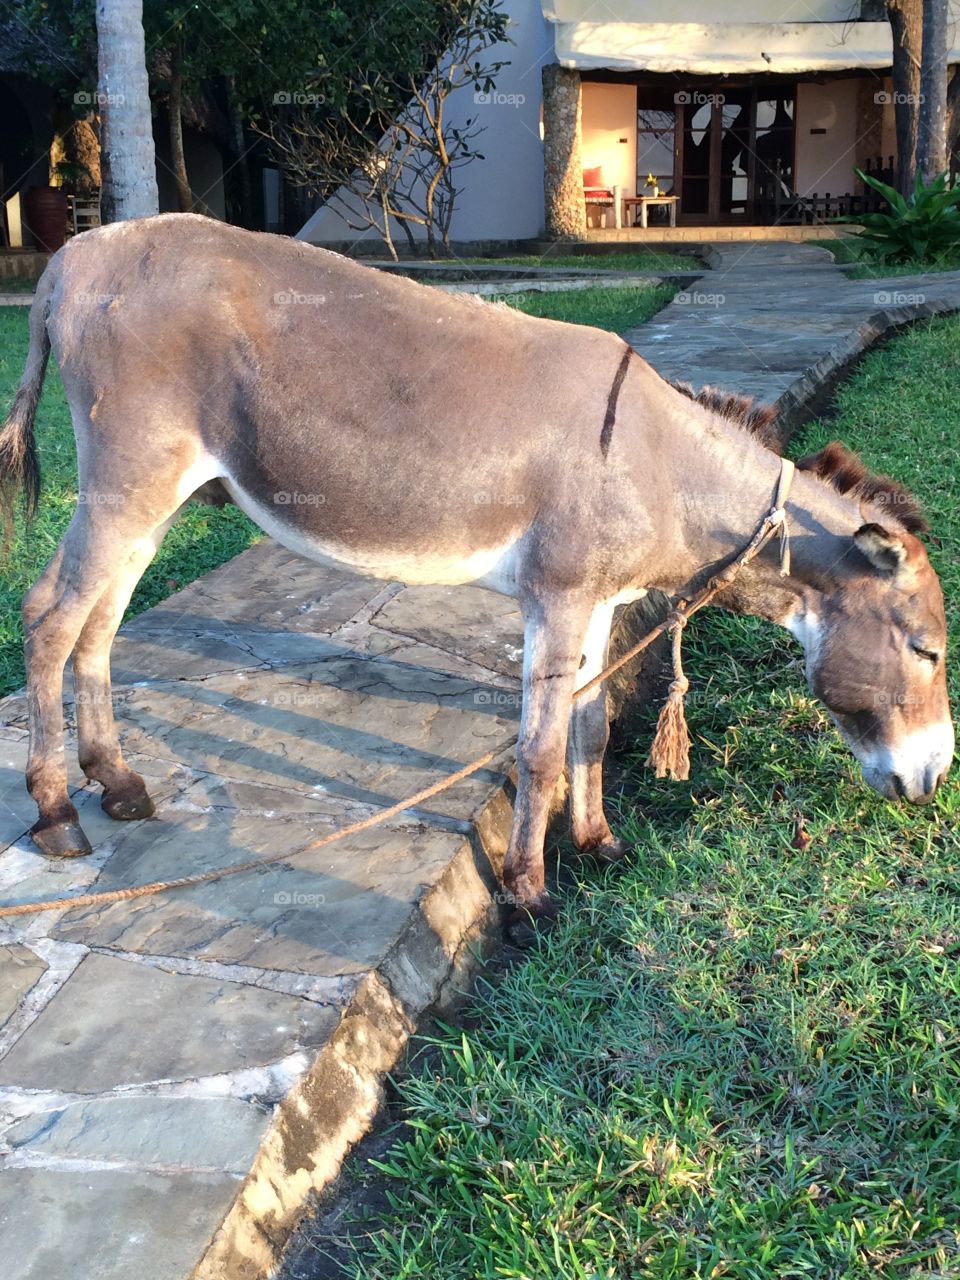 Donkey in Kenya 